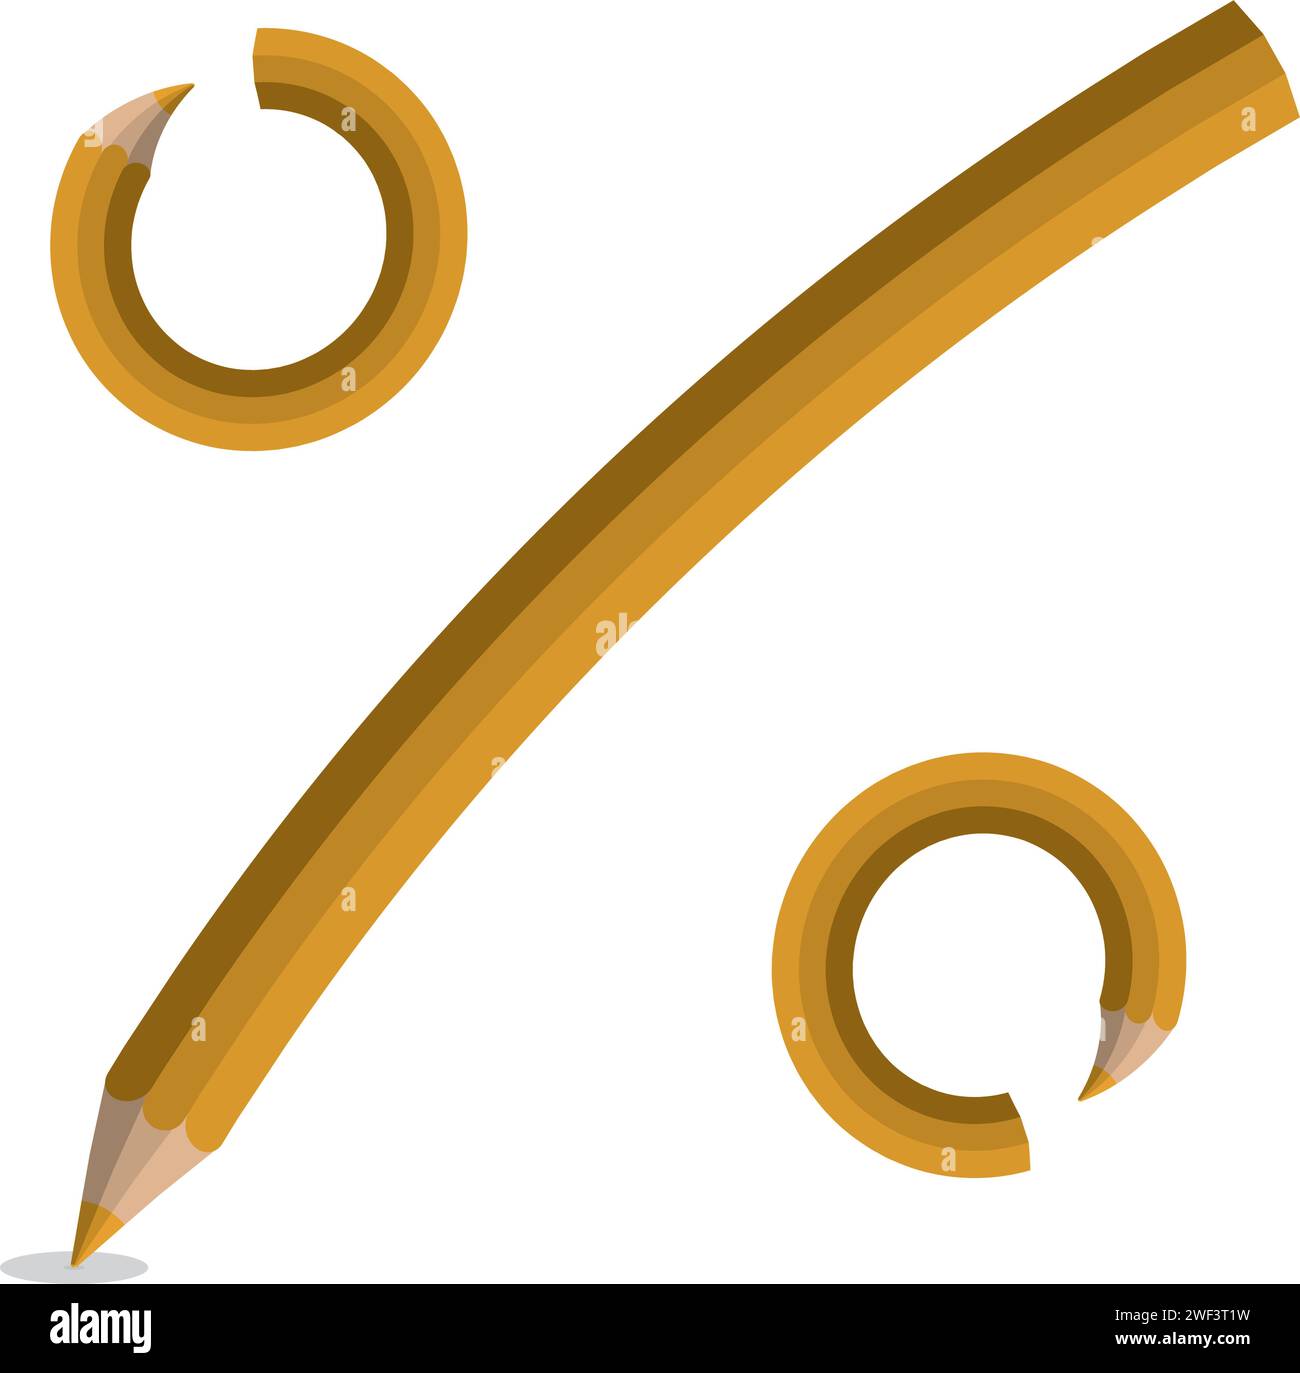 Une illustration de concept éducatif d'un crayon jaune brisé en un symbole de pourcentage, représentant les défis et la réussite dans l'apprentissage Illustration de Vecteur